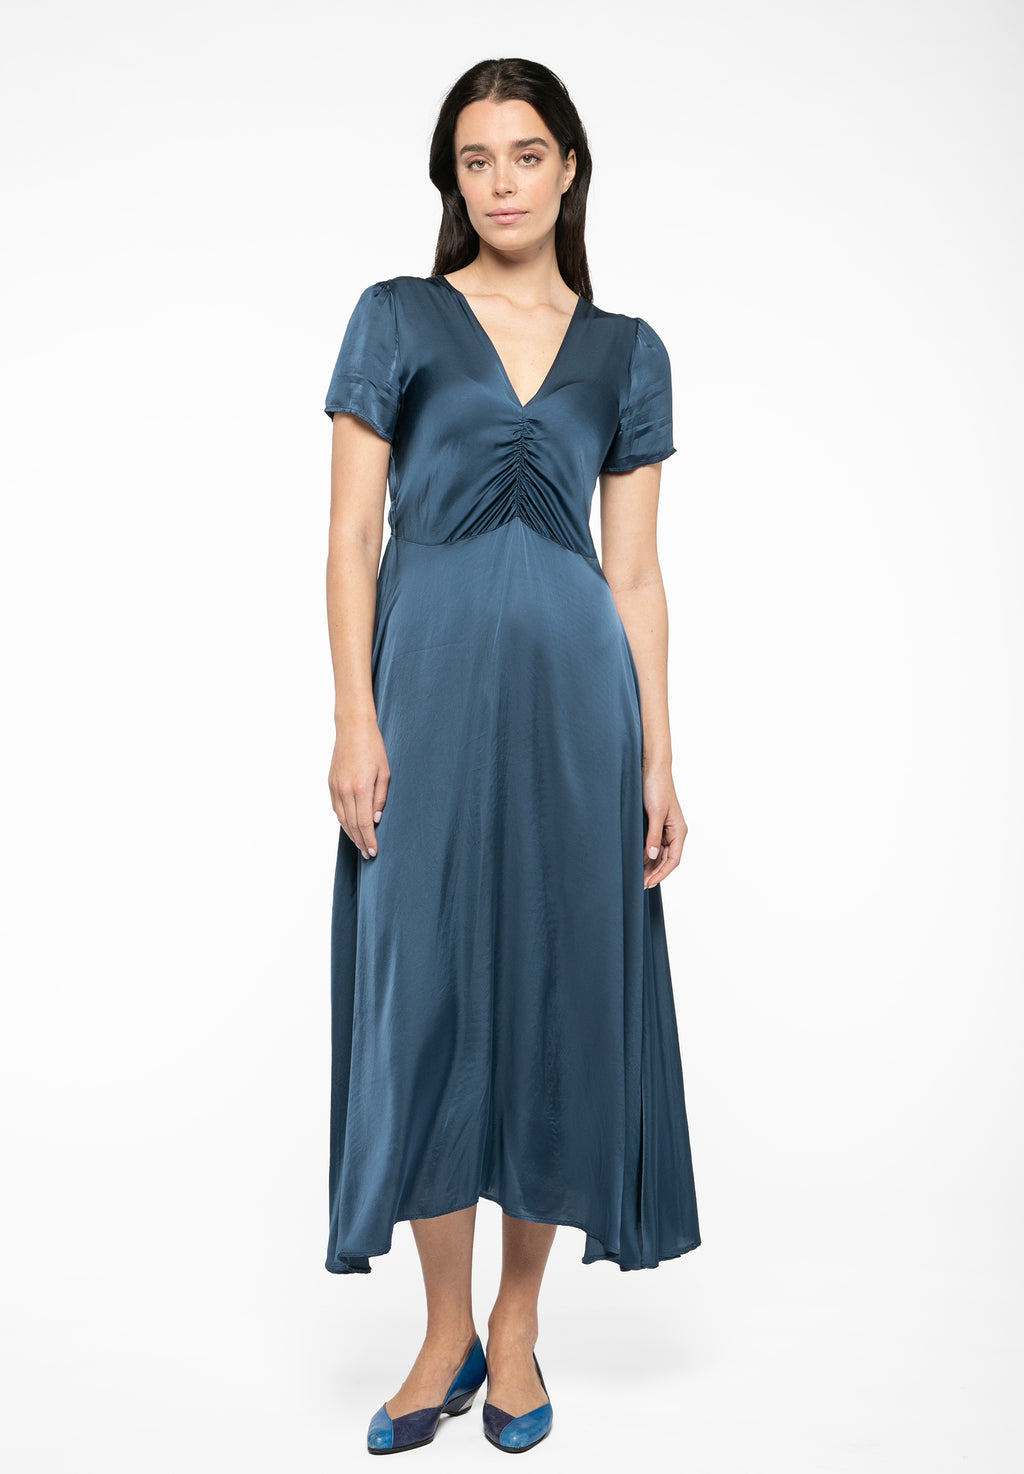 Taormina Dark Blue Dress